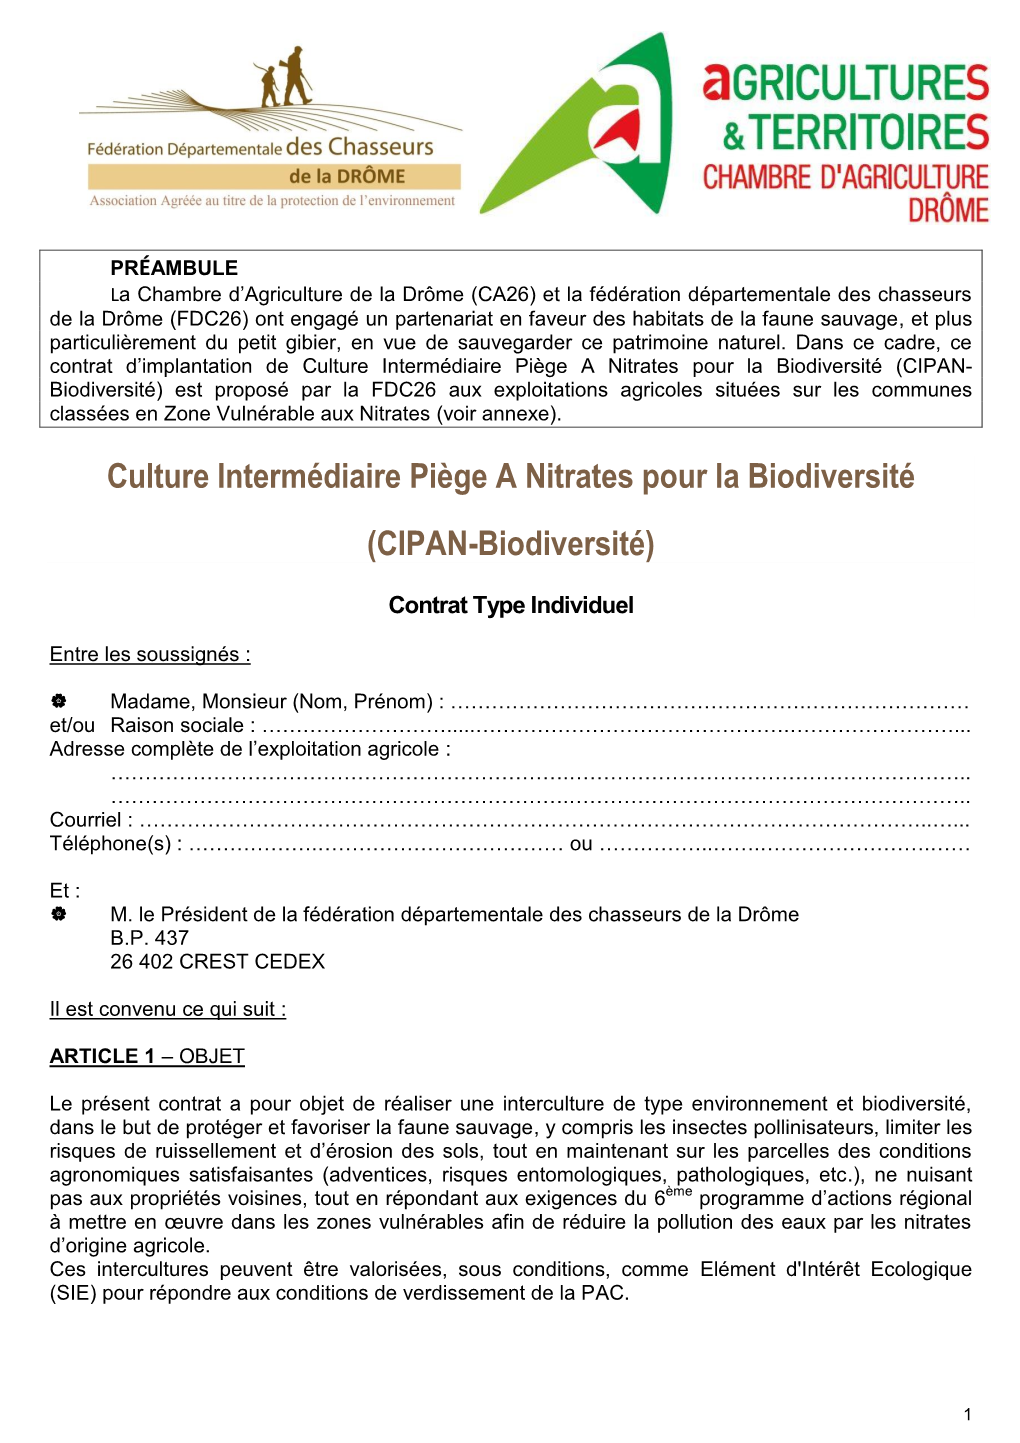 Culture Intermédiaire Piège a Nitrates Pour La Biodiversité (CIPAN